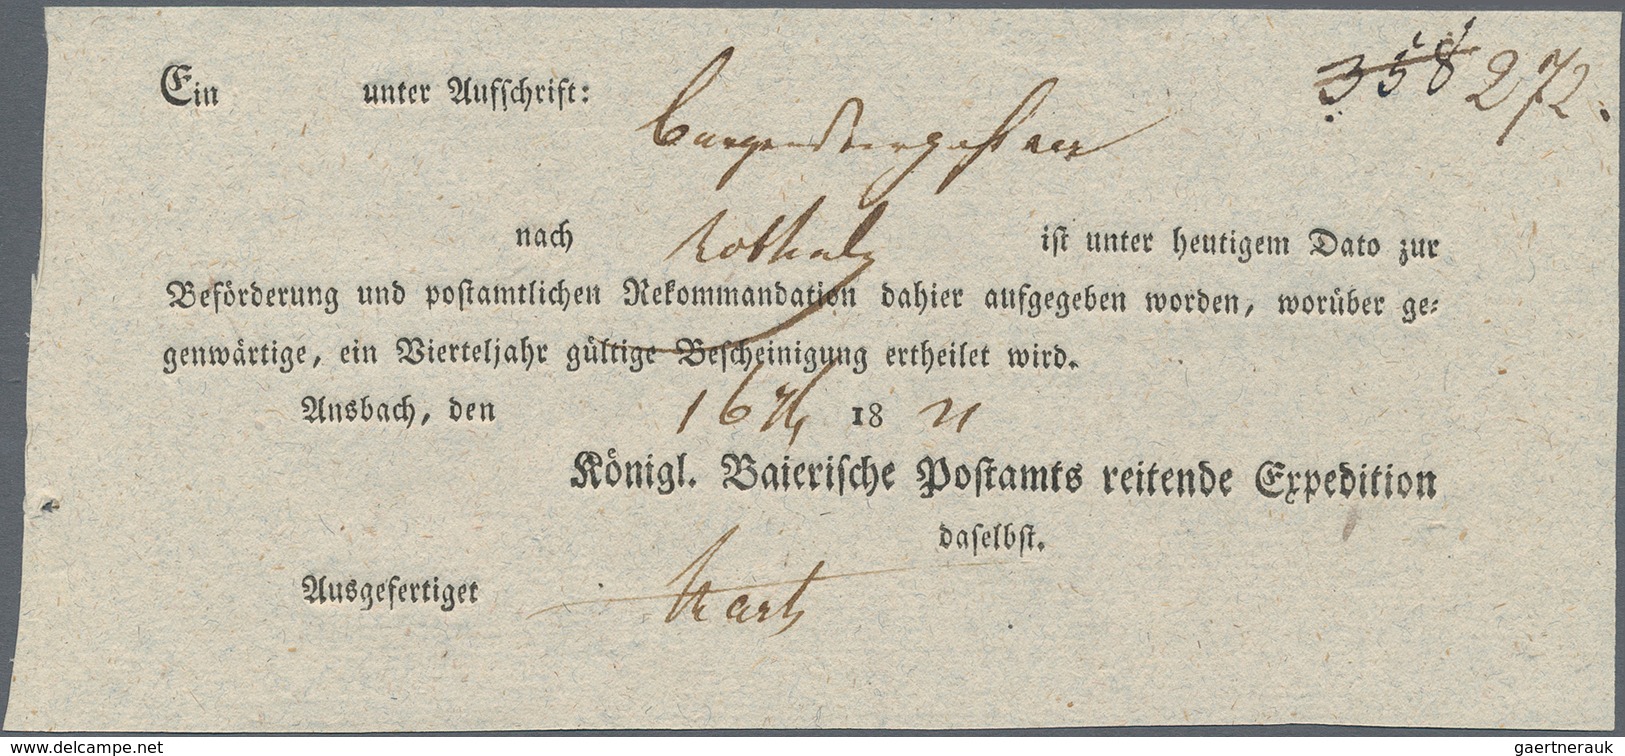 Deutschland: 1781/1998, POSTGESCHICHTE BAYERN: mit viel historischer Kenntnis aufgebaute Sammlung be